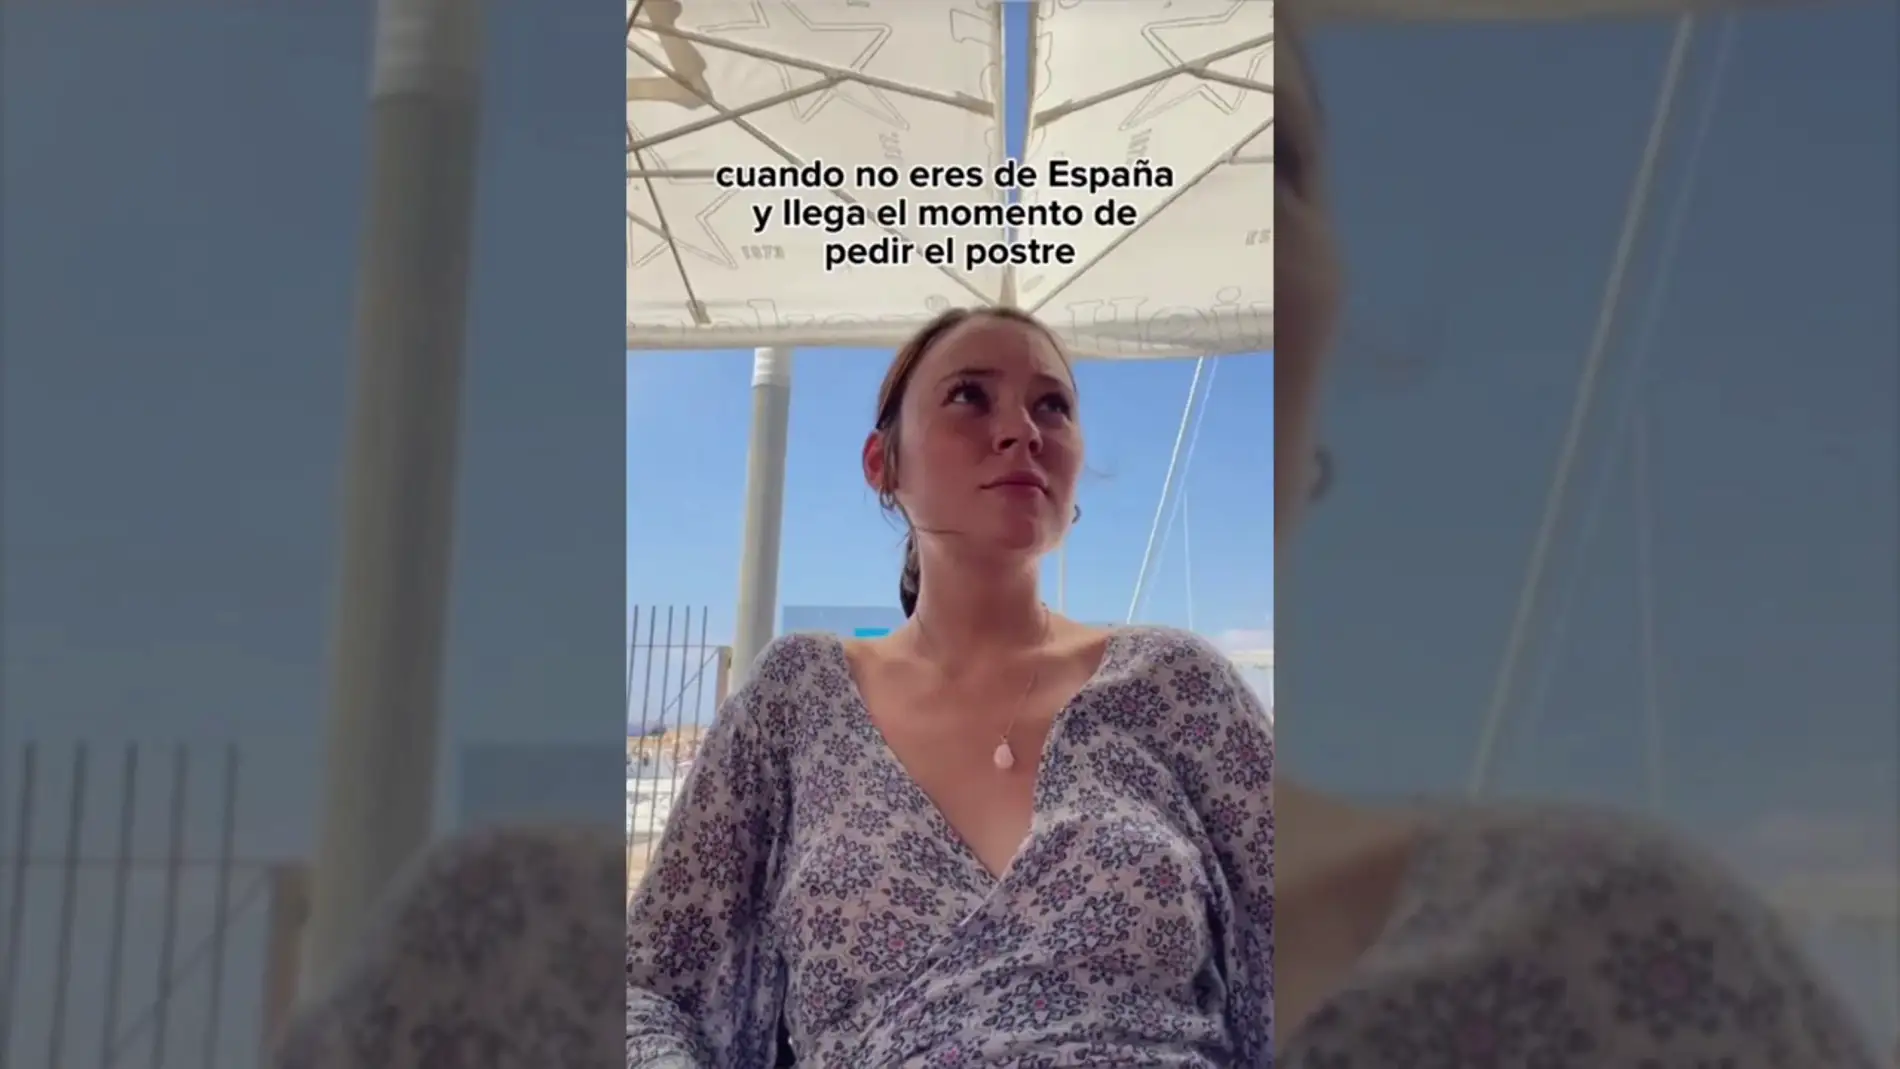 La reacción de una estadounidense al pedir el postre en un restaurante: "Pensaba que sabía español"